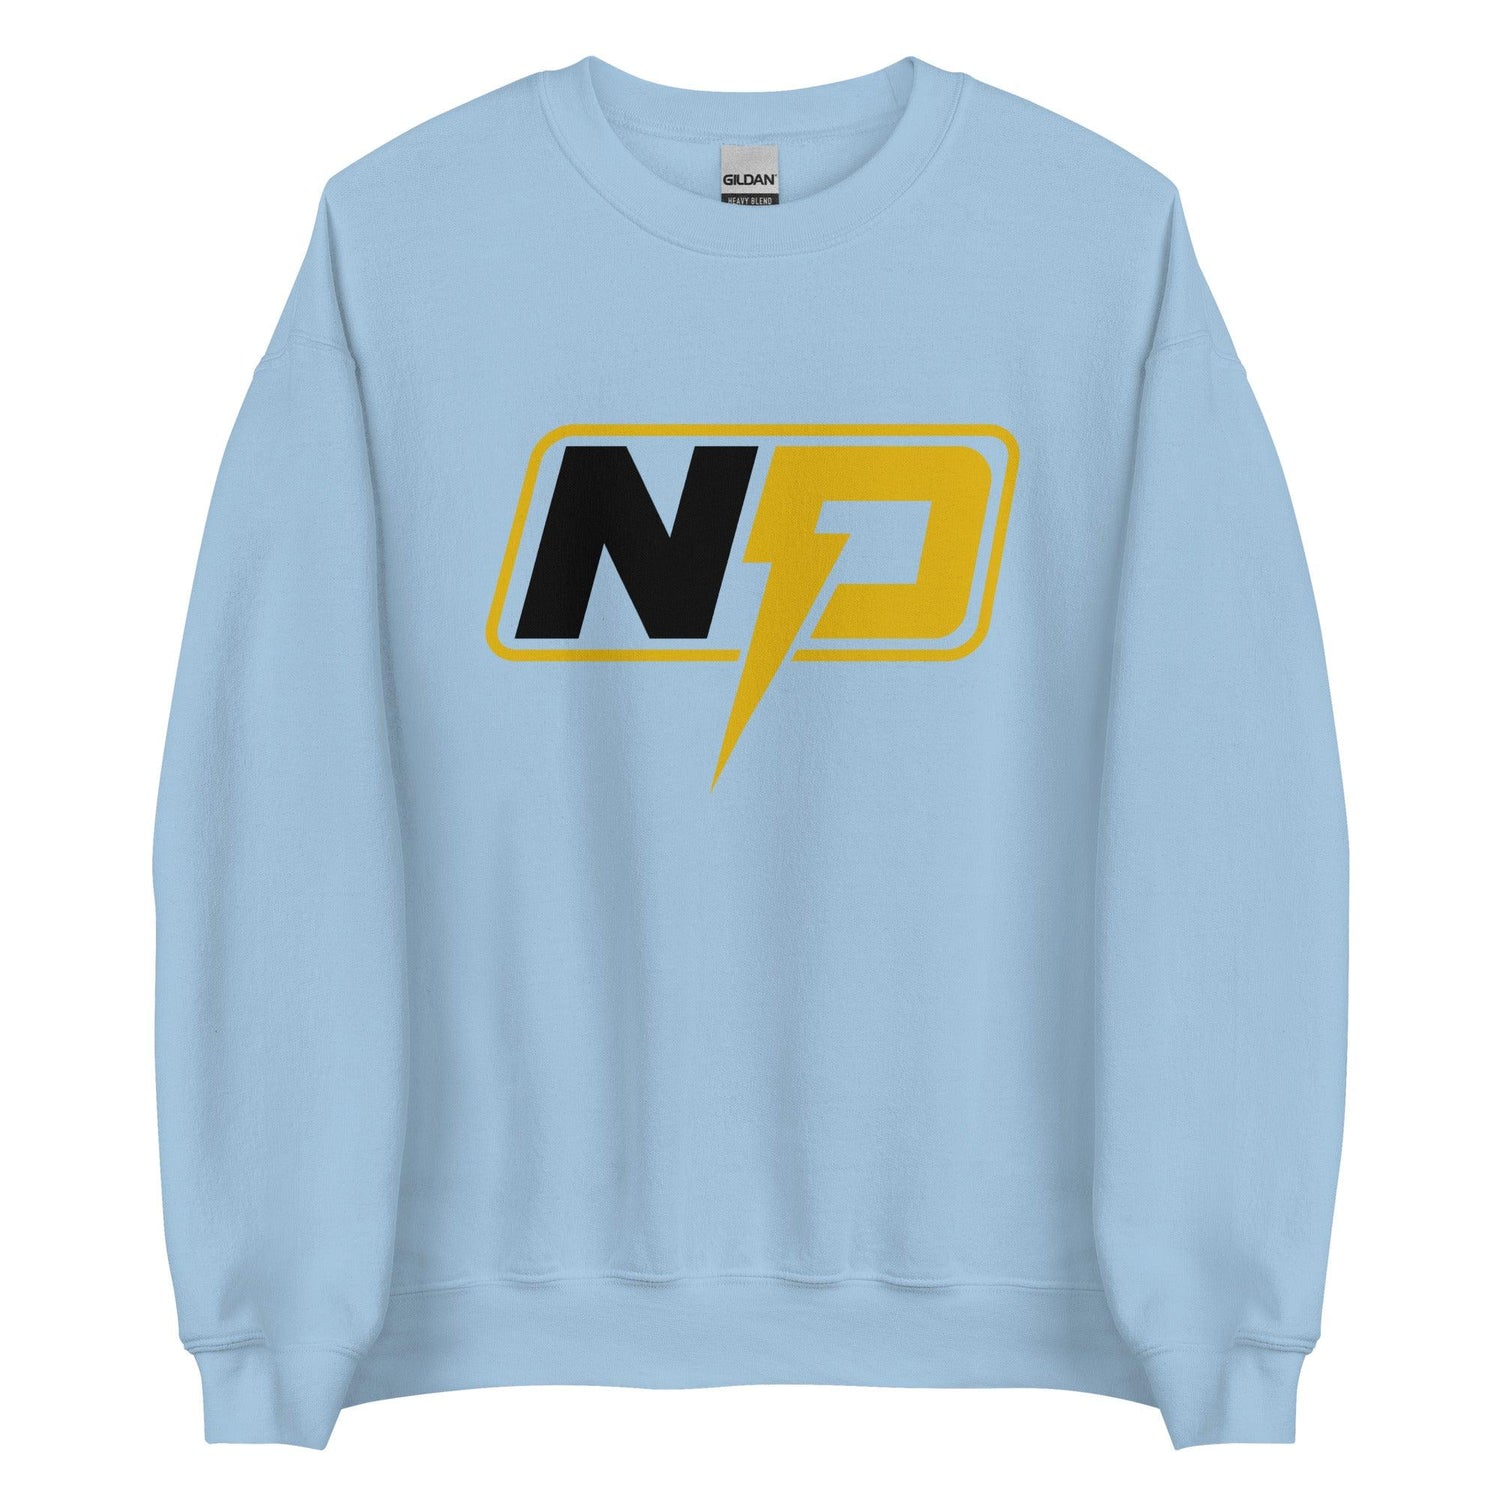 Nathaniel Peat “Essential” Sweatshirt - Fan Arch